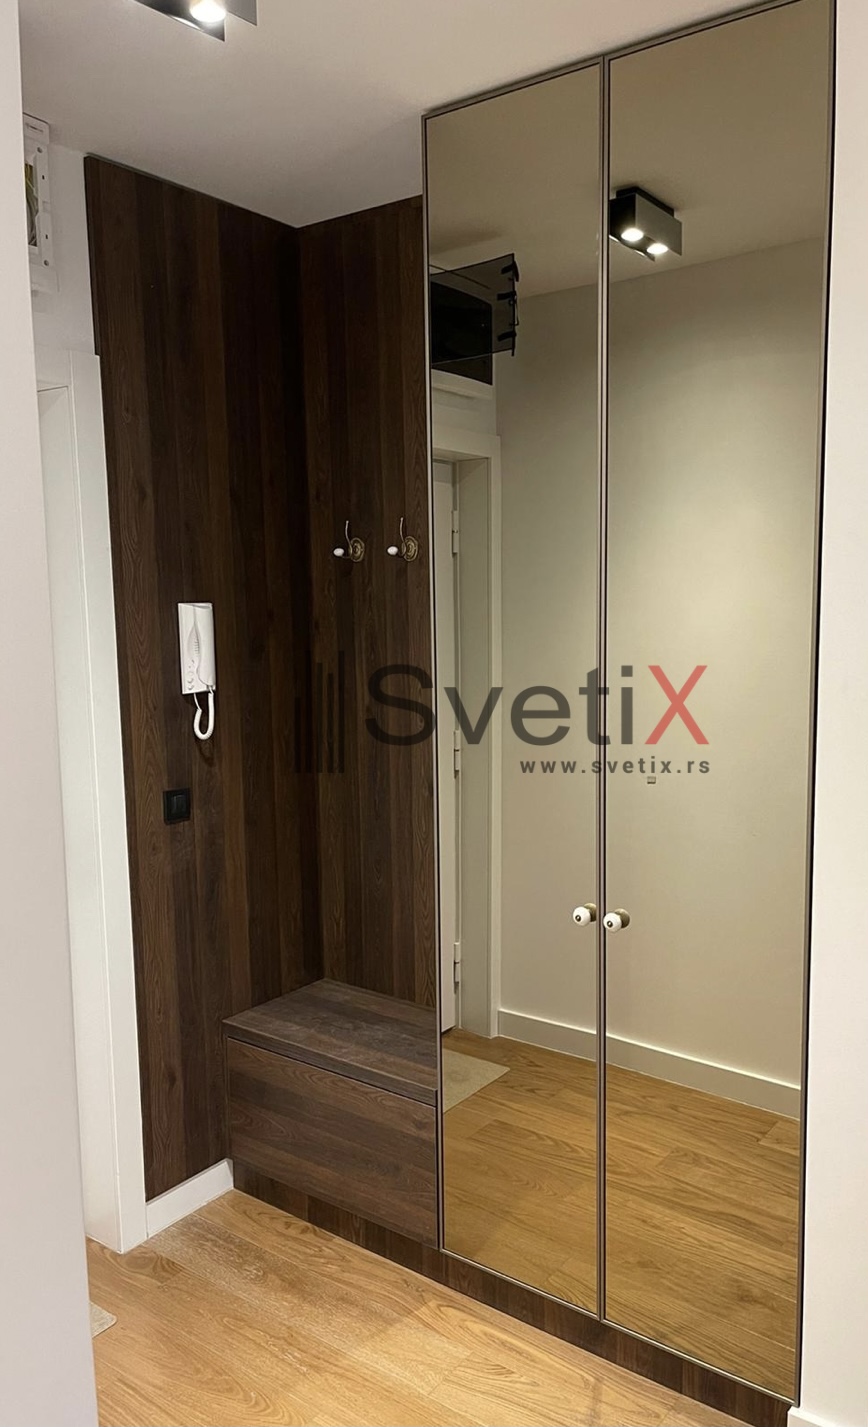 Plakar SVETIX - Al ramovi Svetix u sampanj boji od bronzanog ogledala - idealno reÅ¡enje za hodnike gde nema prostora za klizna vrata